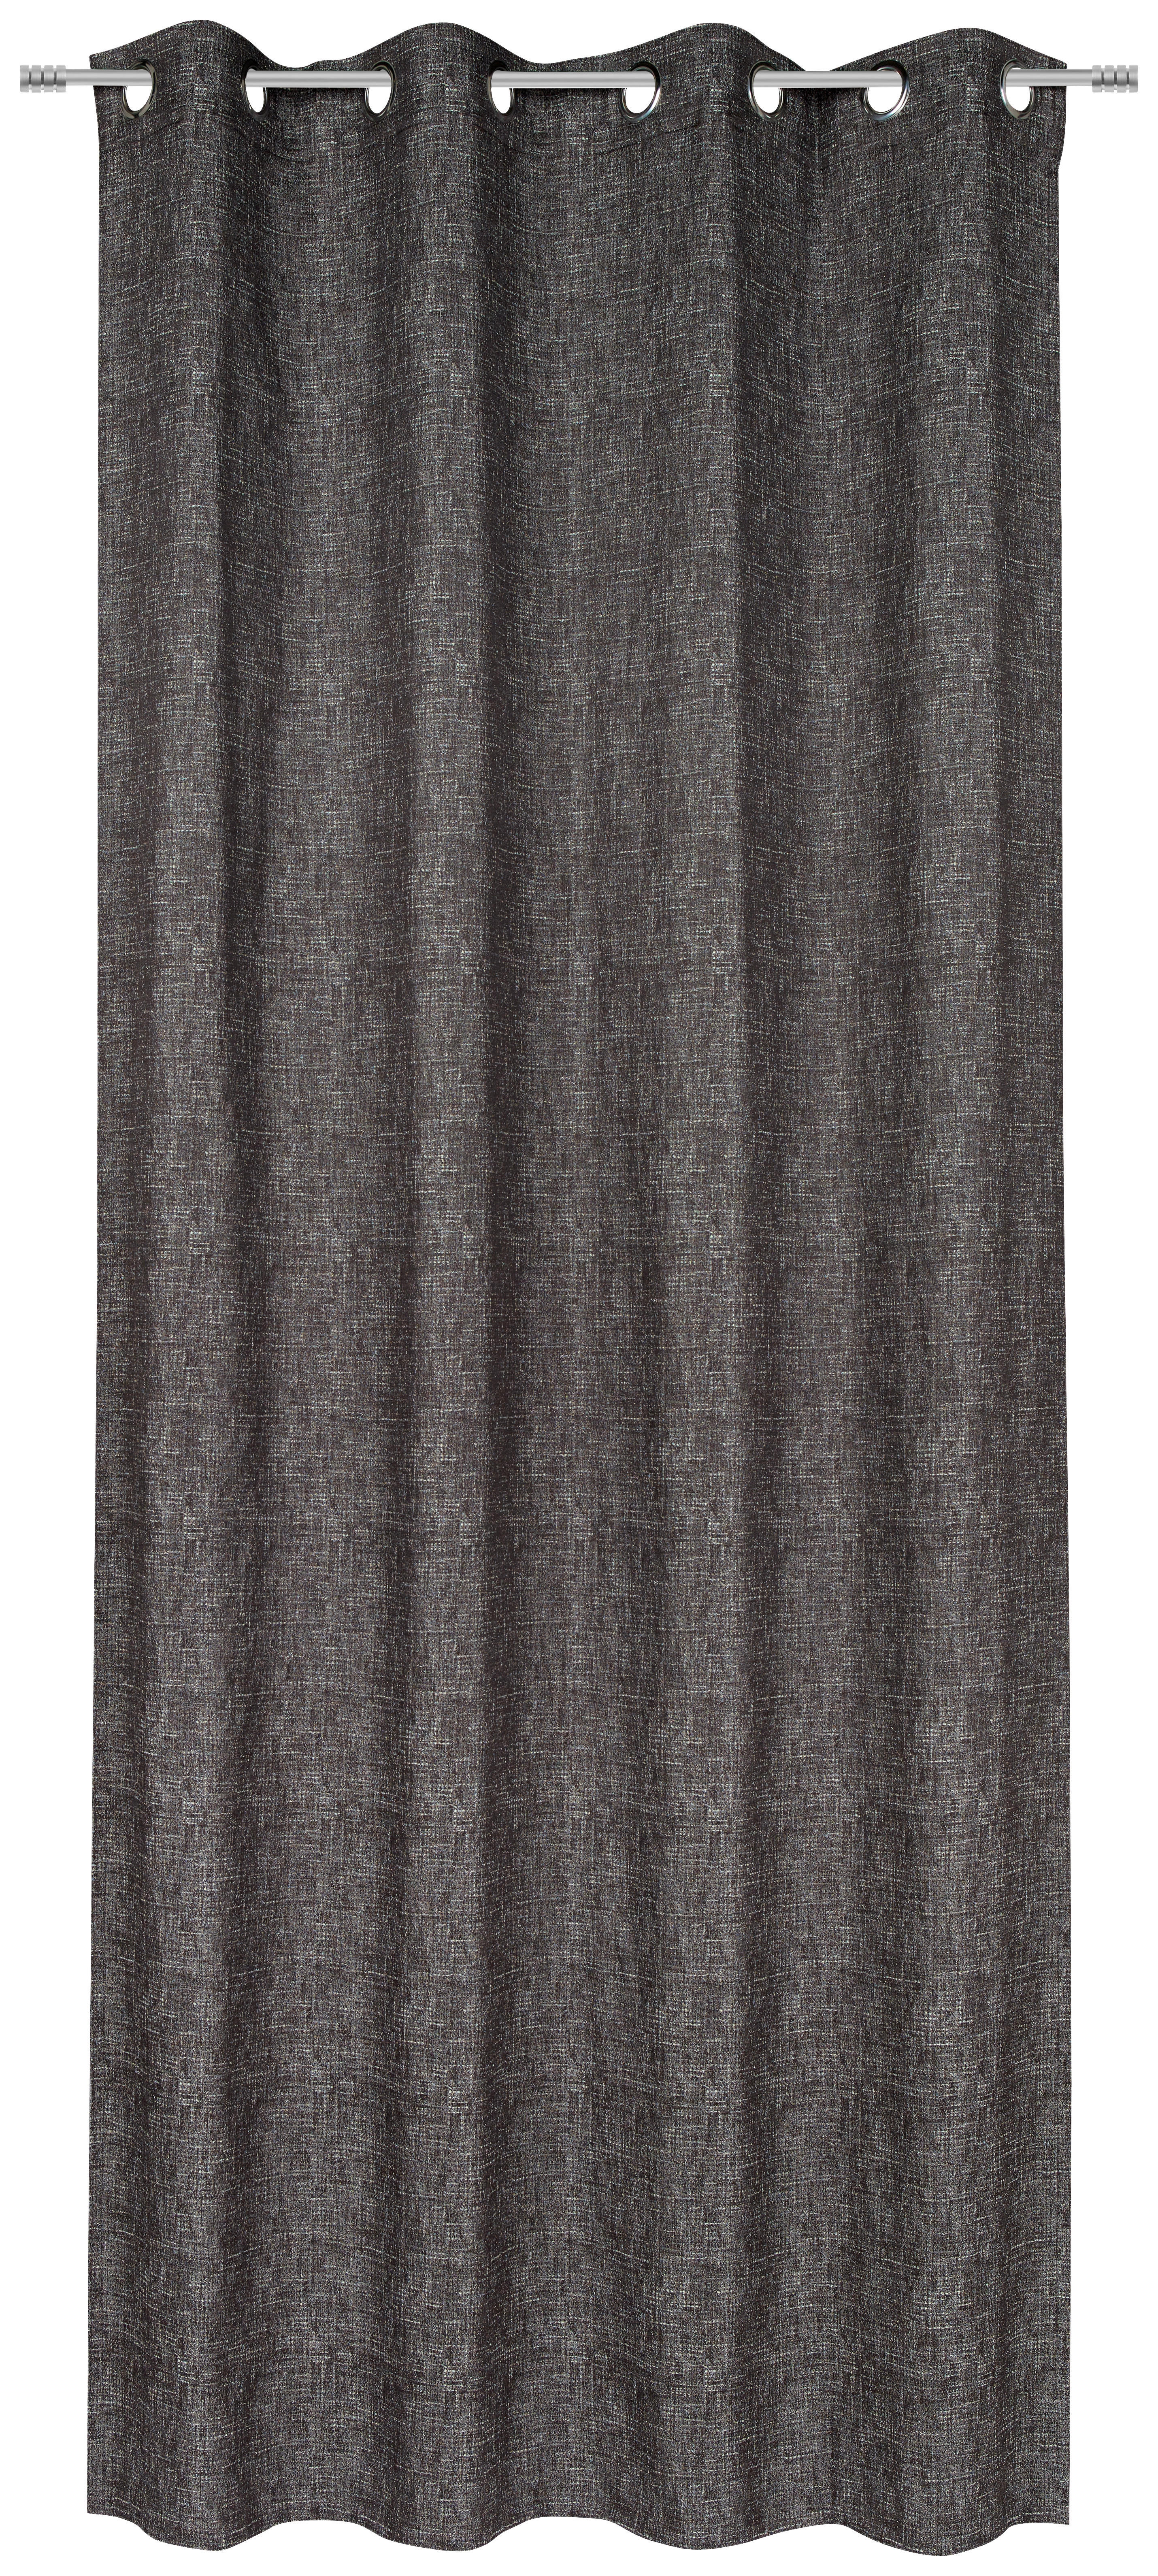 ÖSENSCHAL Gent blickdicht 135/250 cm   - Schwarz/Braun, Design, Textil (135/250cm) - Ambiente